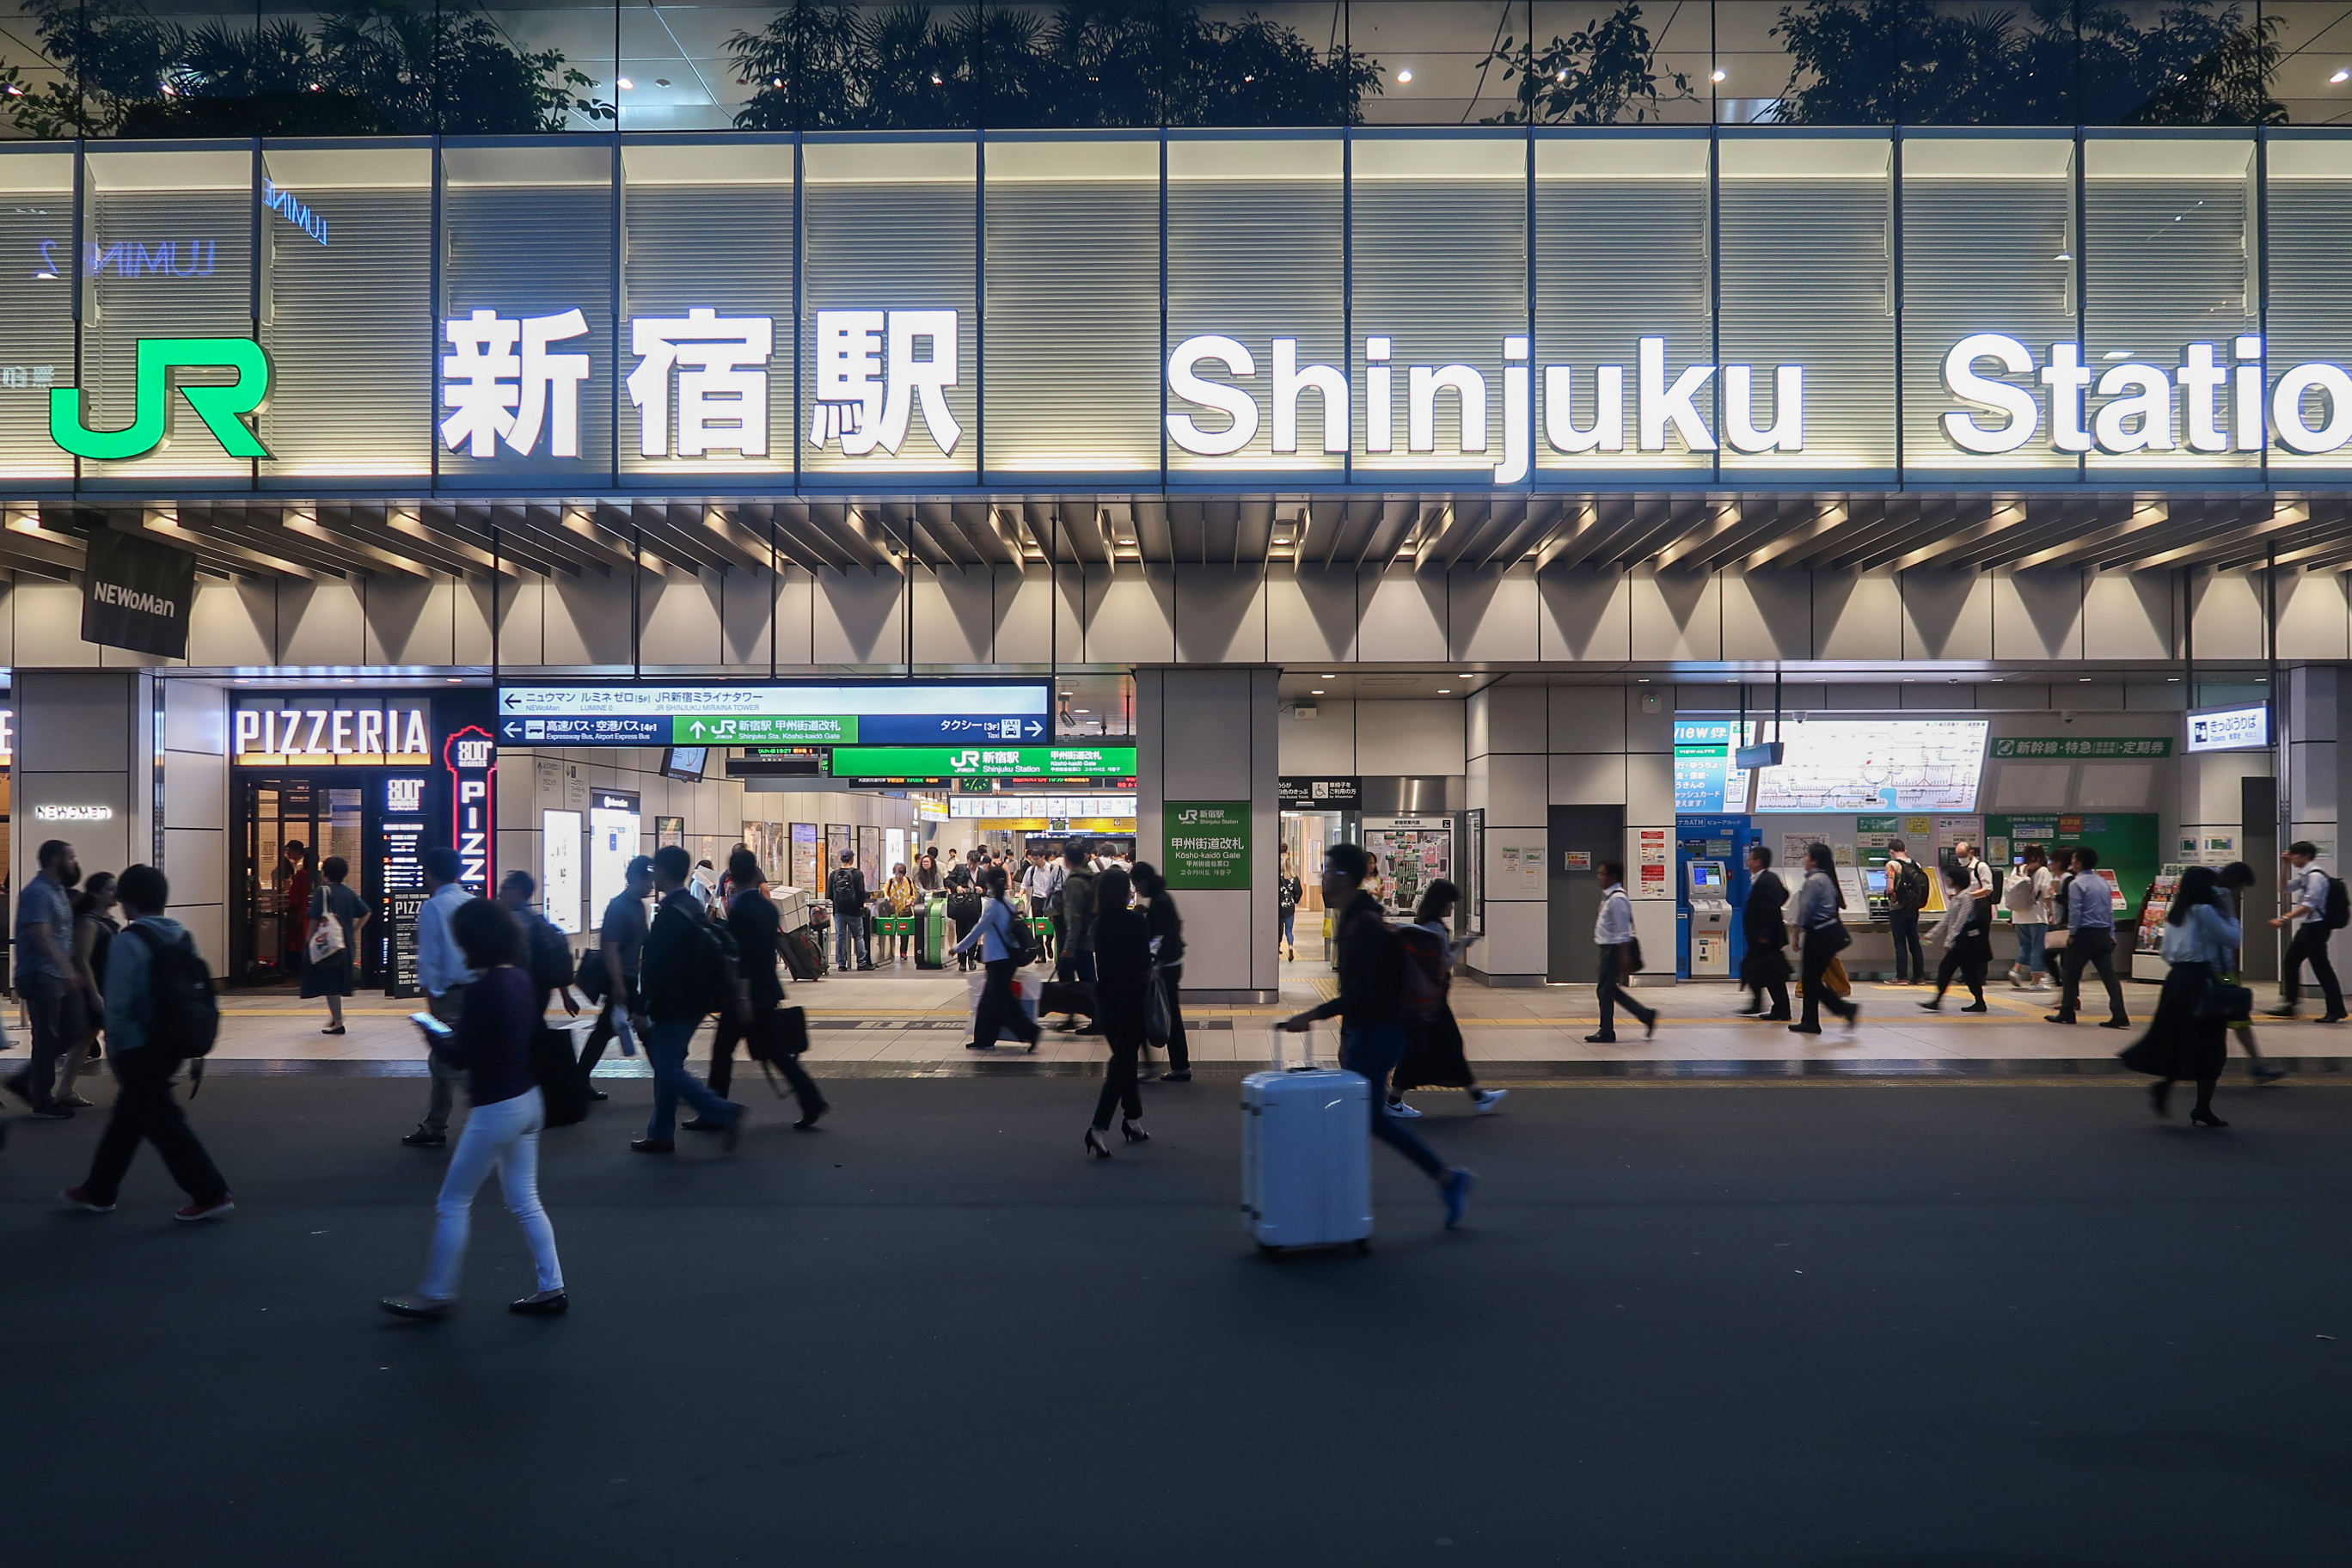 shinjuku station at night